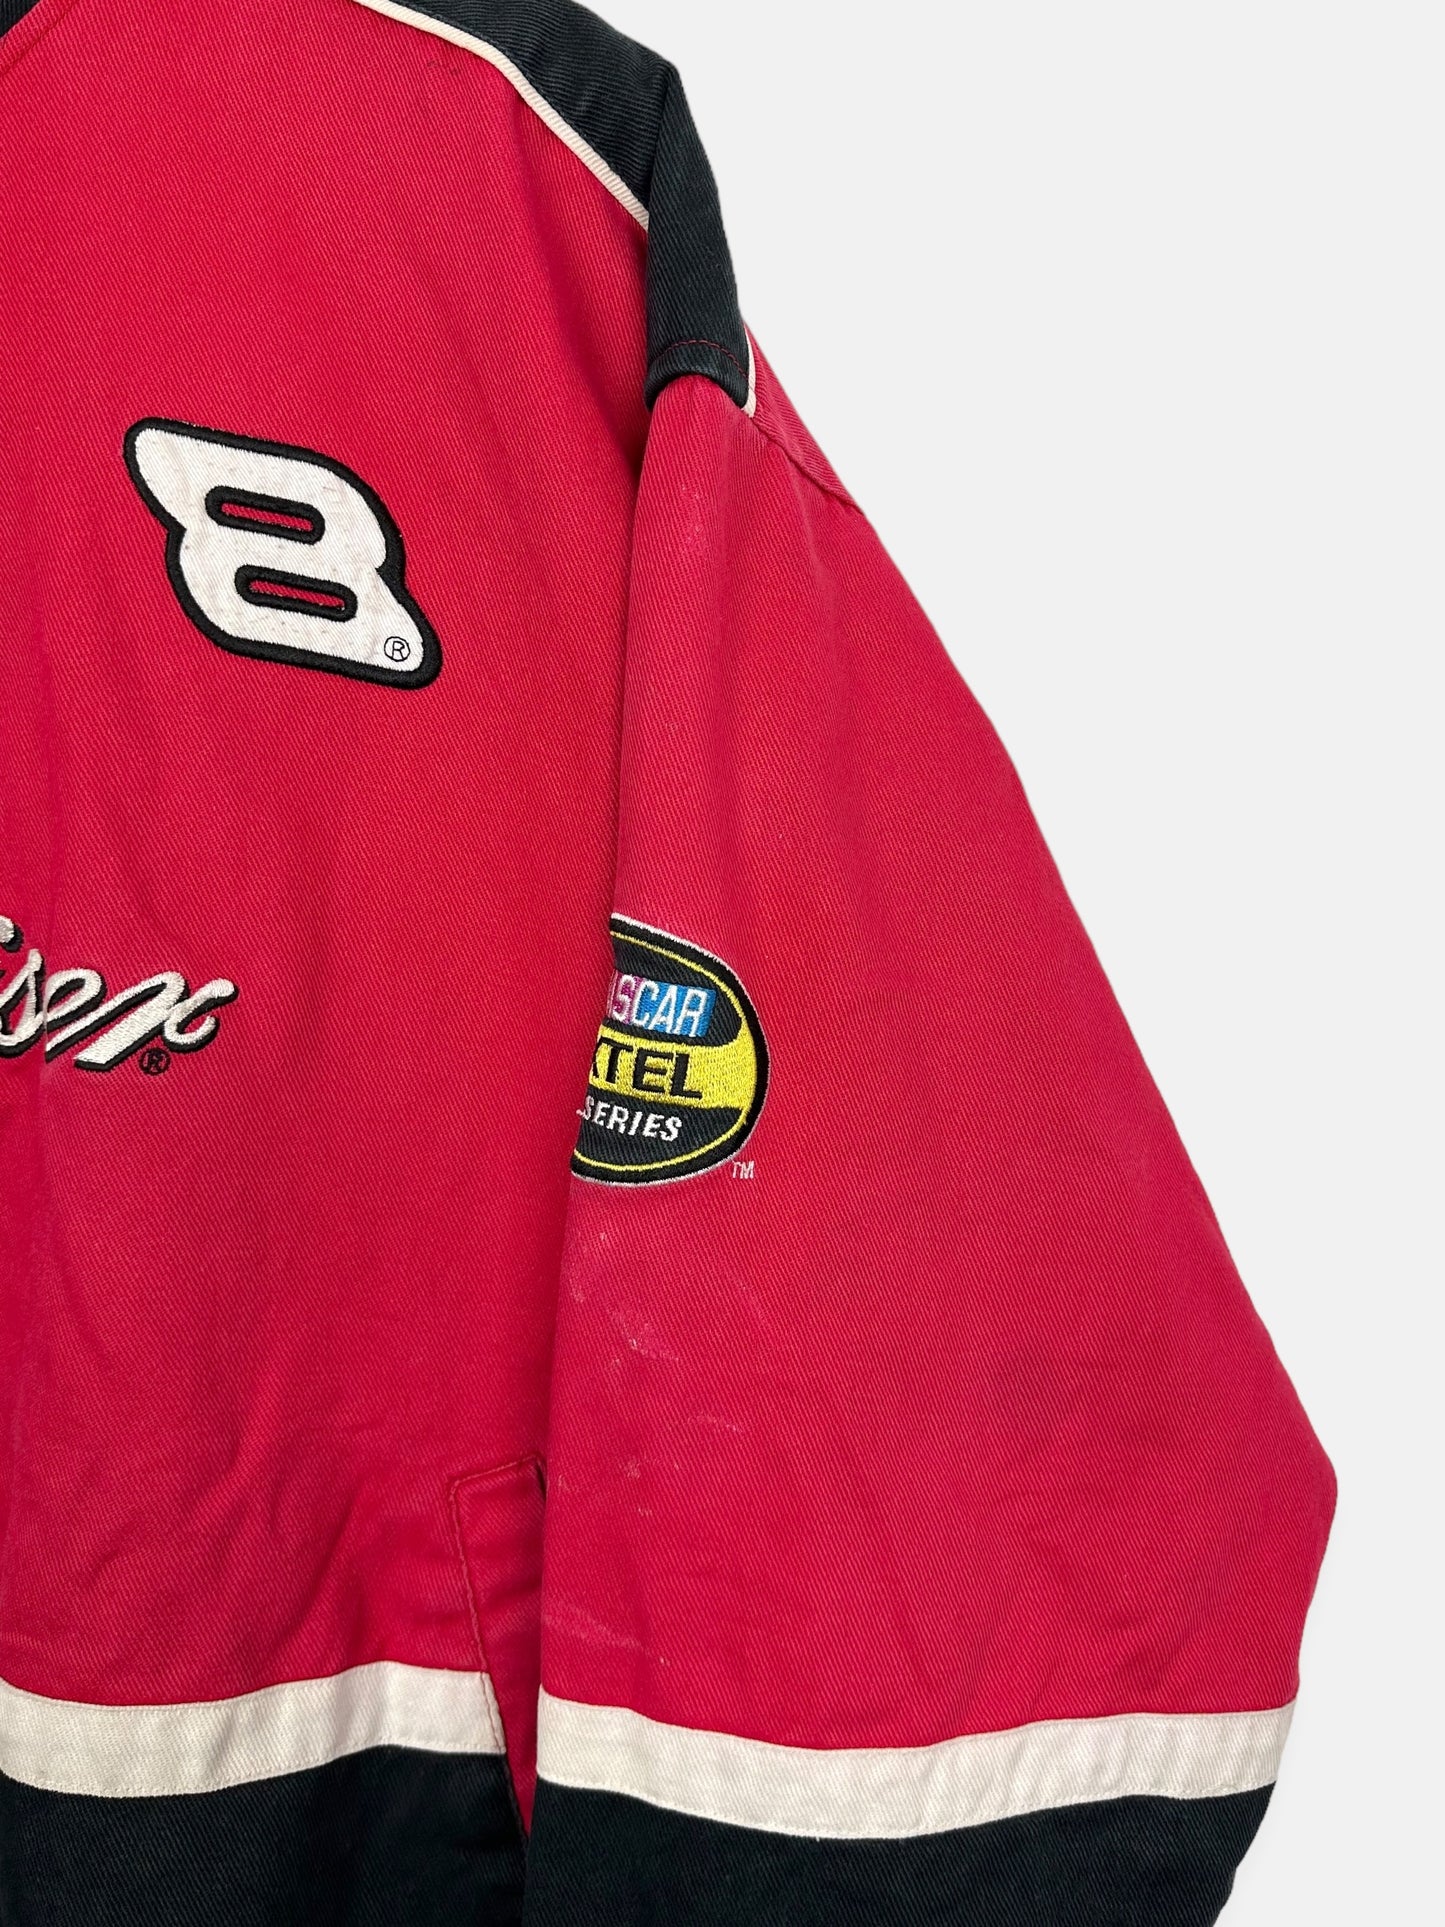 90's Nascar Budweiser #8 Dale Jr. Embroidered Vintage Racing Jacket Size L